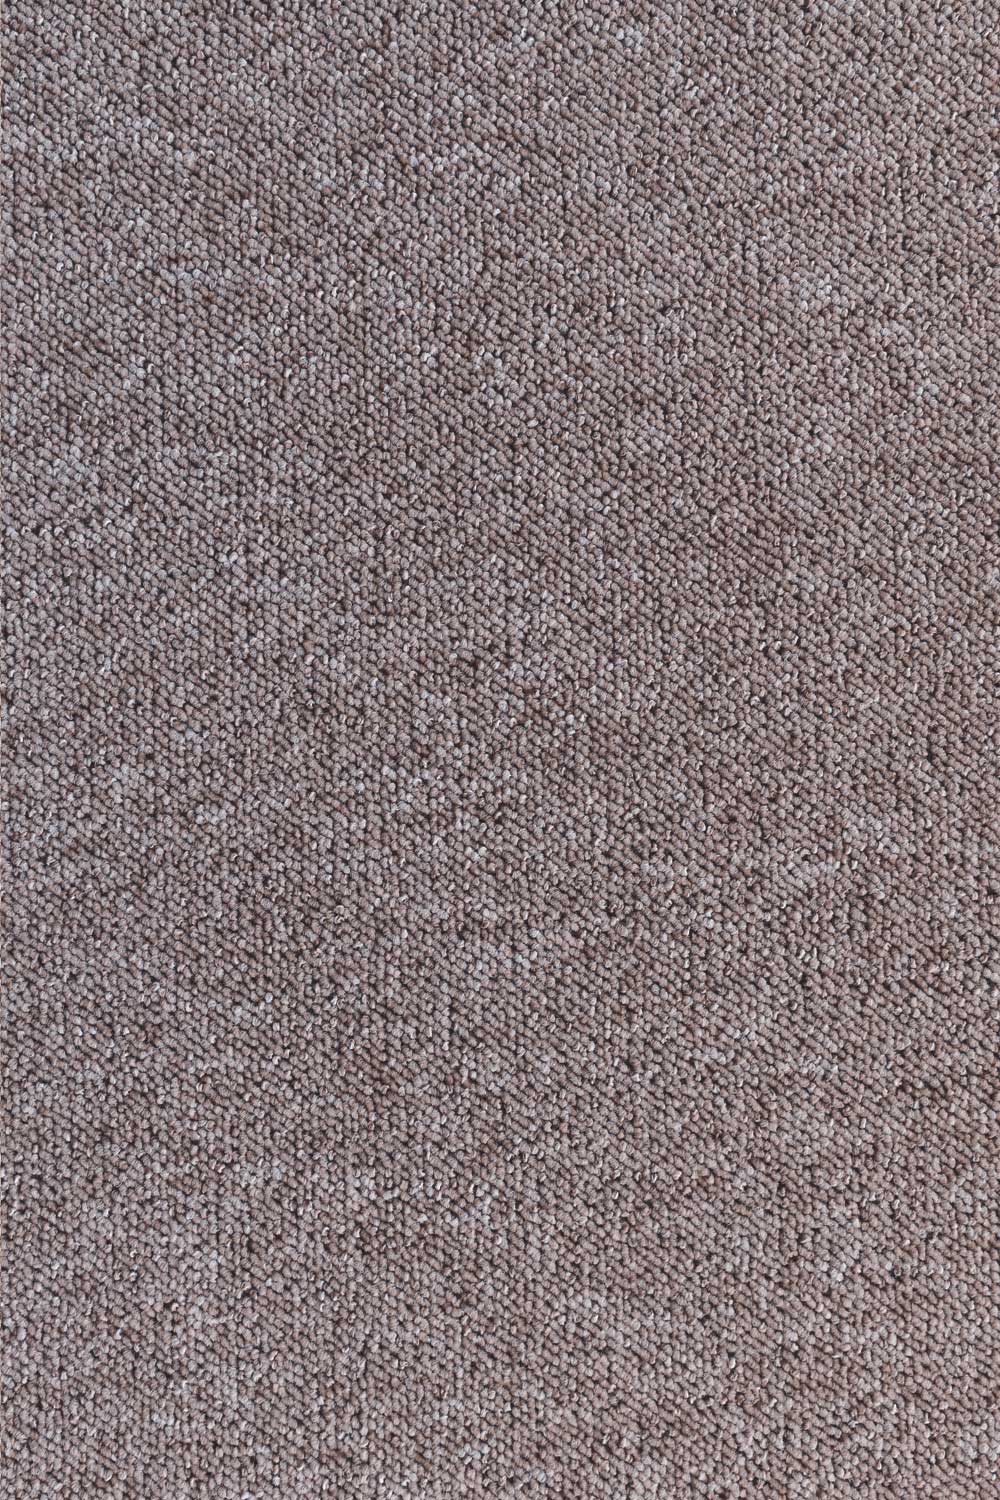 Metrážny koberec ROBSON 1714 500 cm